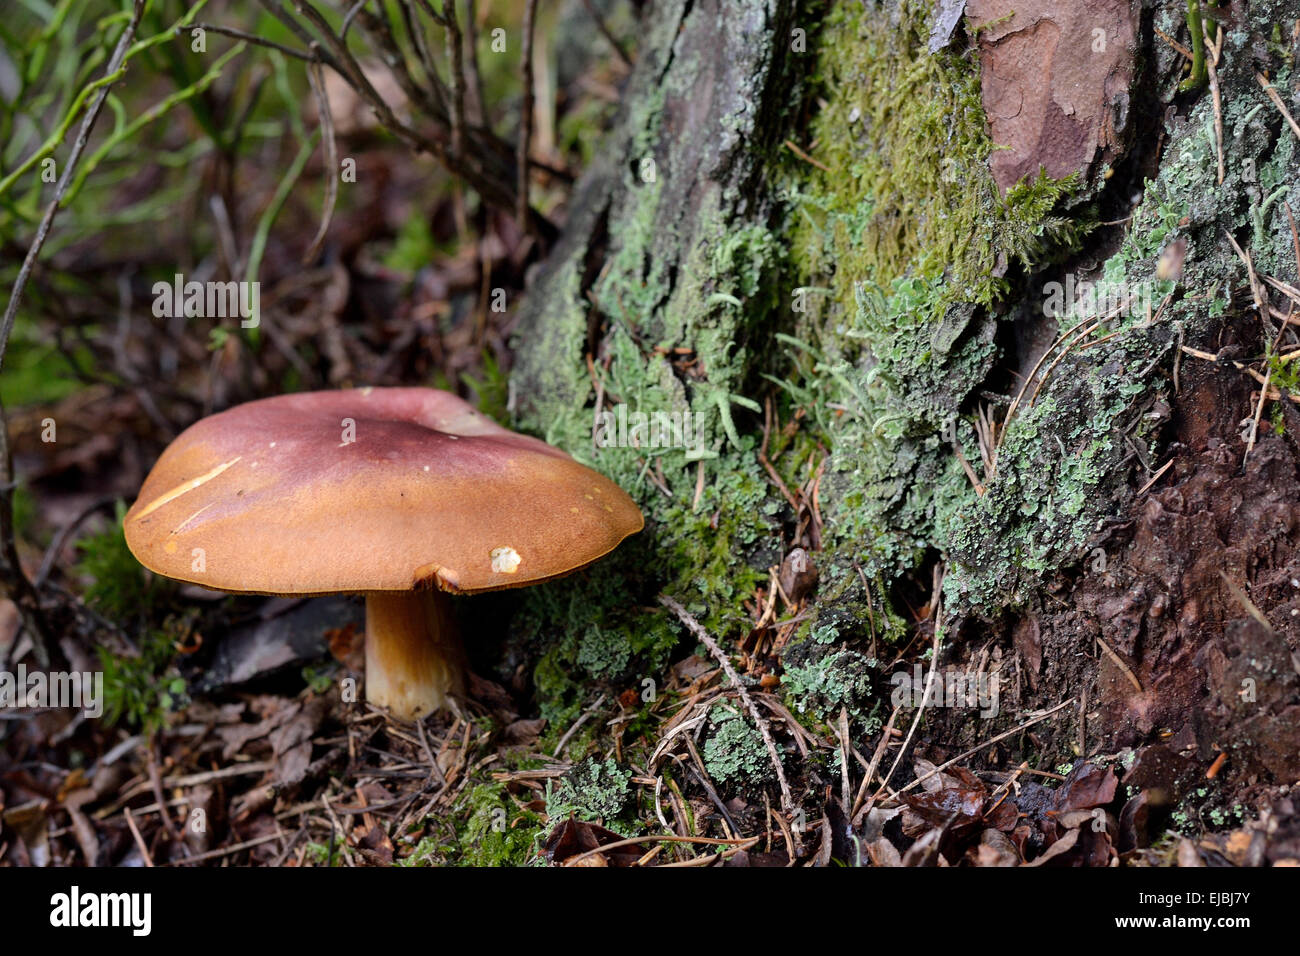 brown mushroom next to tree trunk Stock Photo